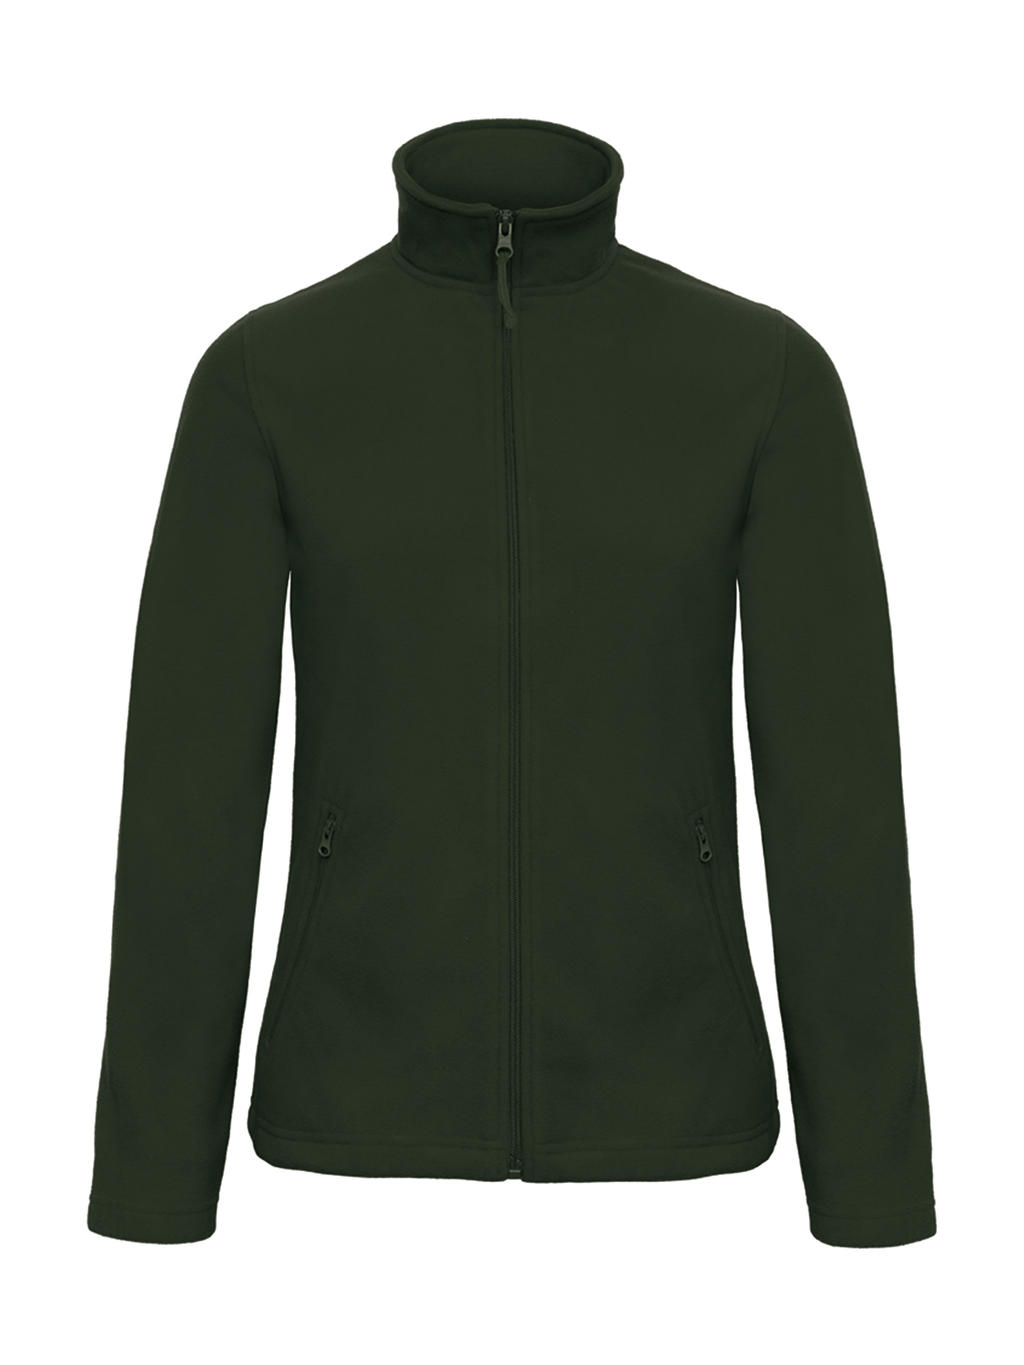  ID.501/women Micro Fleece Full Zip in Farbe Forest Green